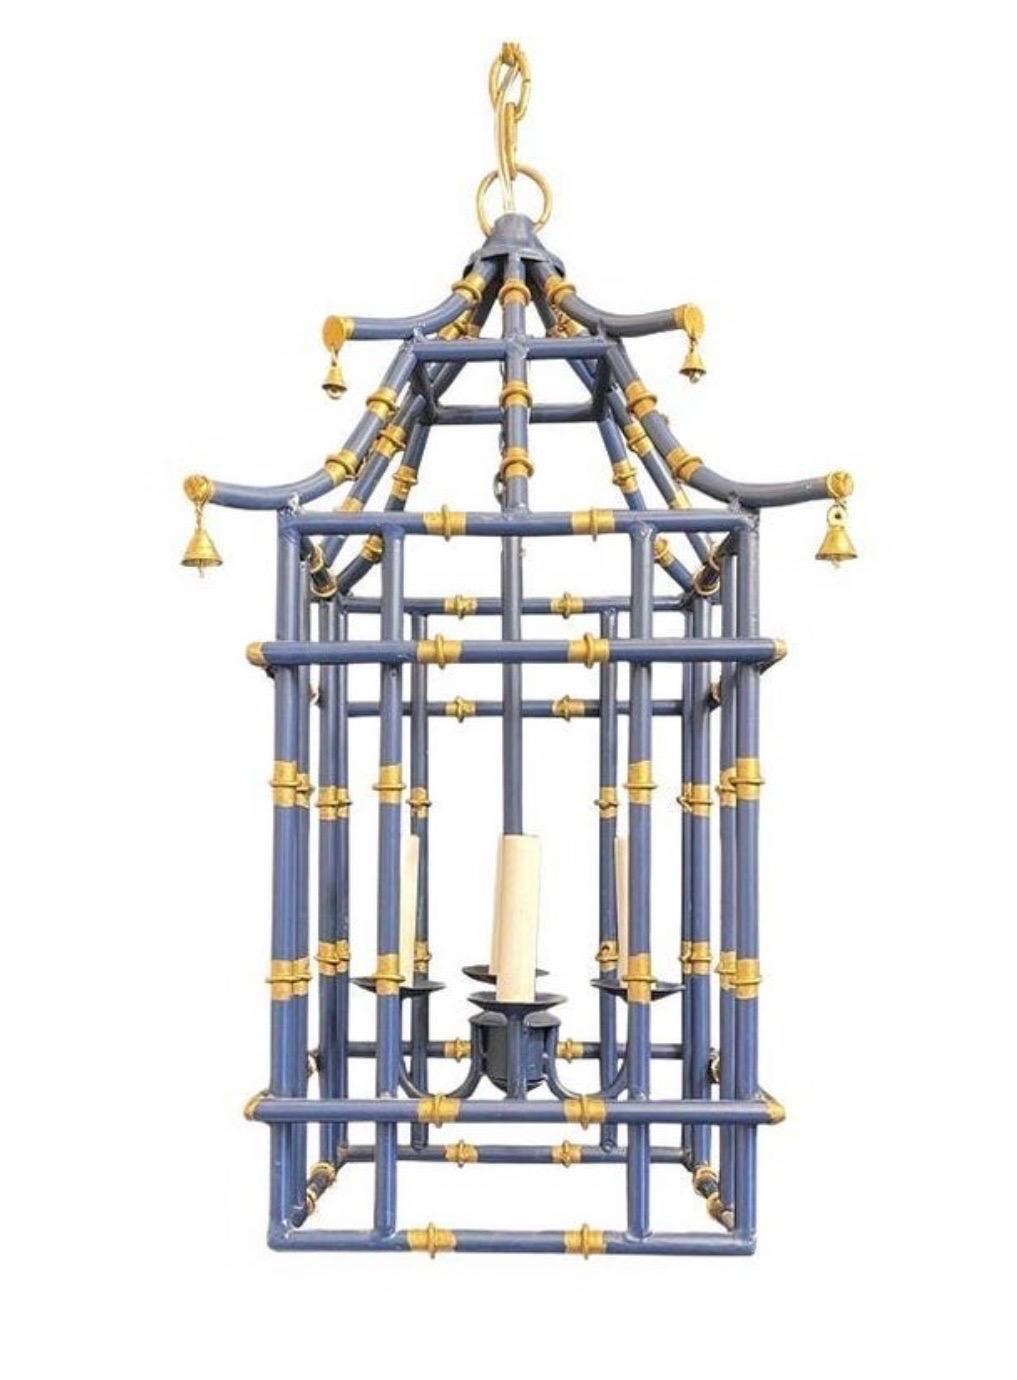 Magnifique lanterne chinoise de taille moyenne en forme de pagode en bambou, bleu marine et dorée, avec 4 candélabres.
Recâblé et prêt à être installé, avec une chaîne d'auvent et le matériel de montage.

Paires de lanternes actuellement